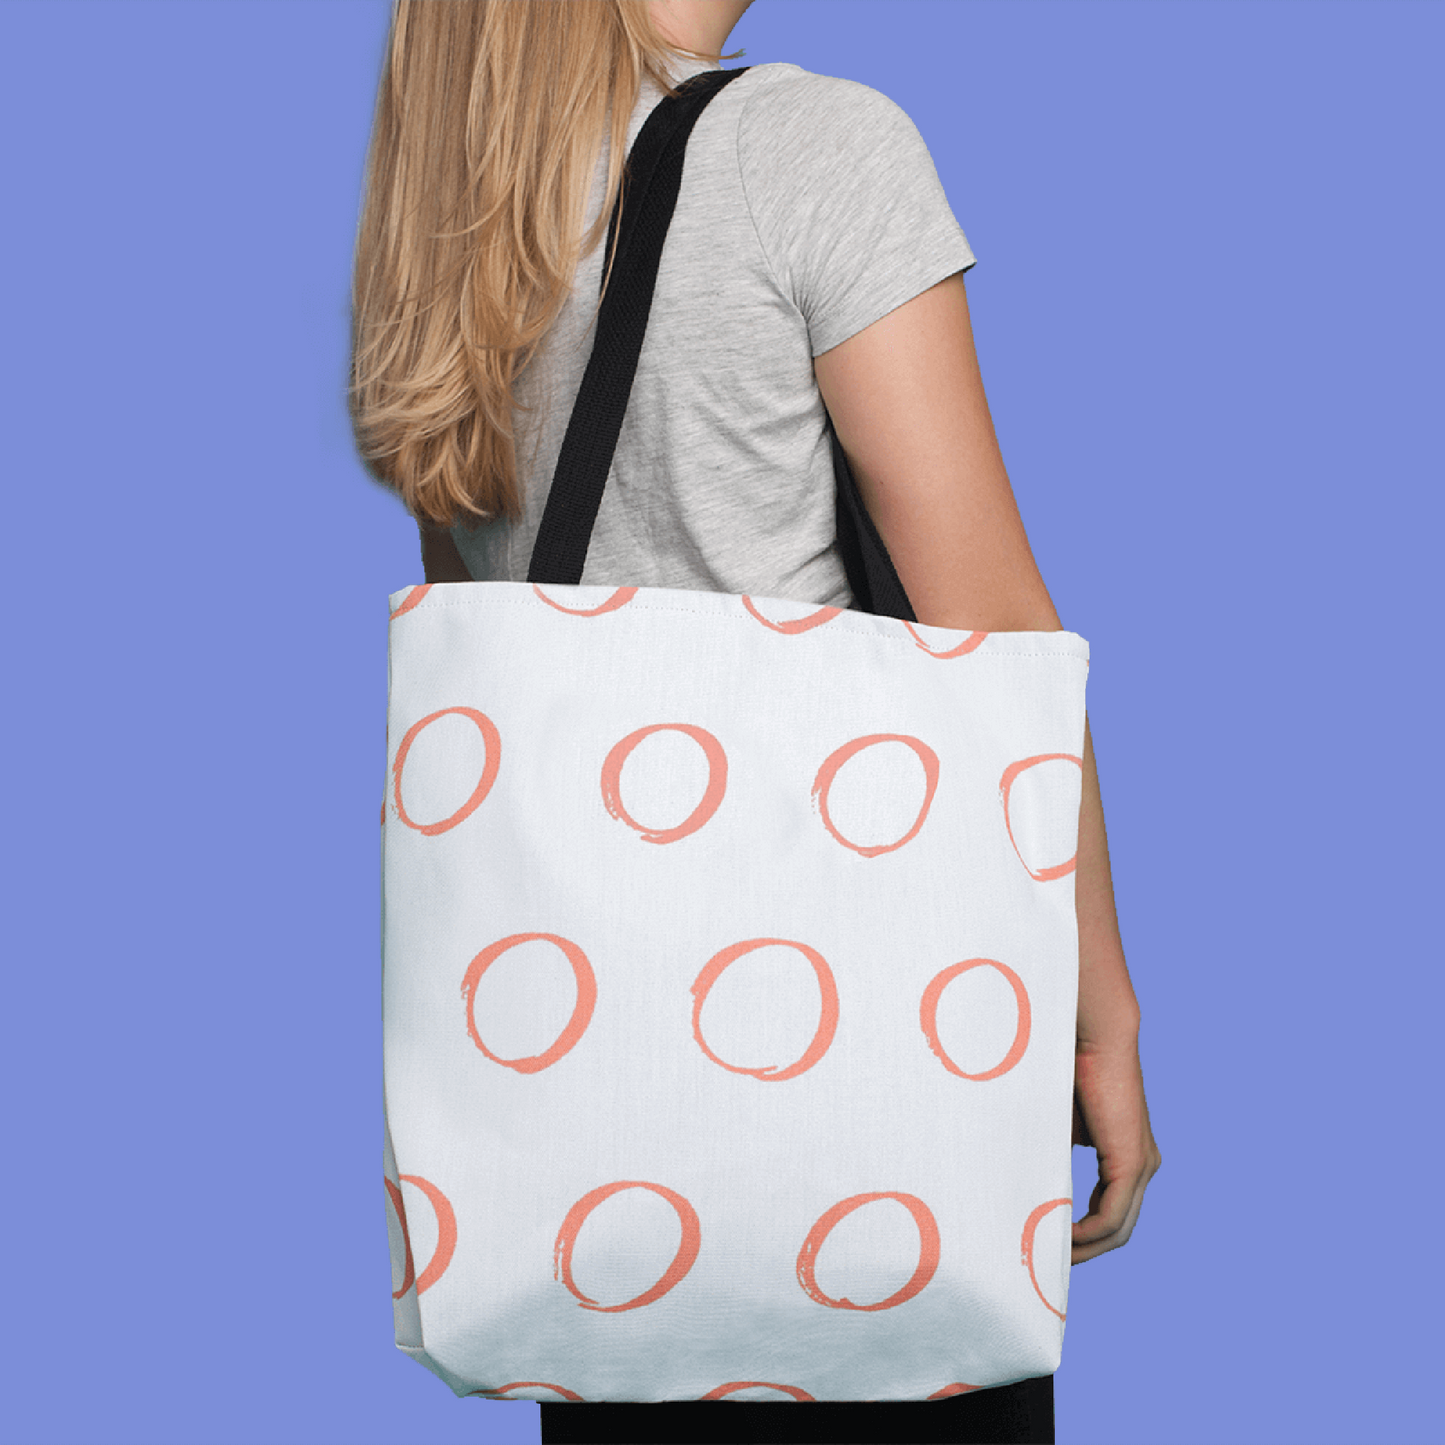 Mermaid Tote Bag For Women, Weekender Beach Bag, Overnight bag, Cute Canvas Tote Bag, Mermaid Gift